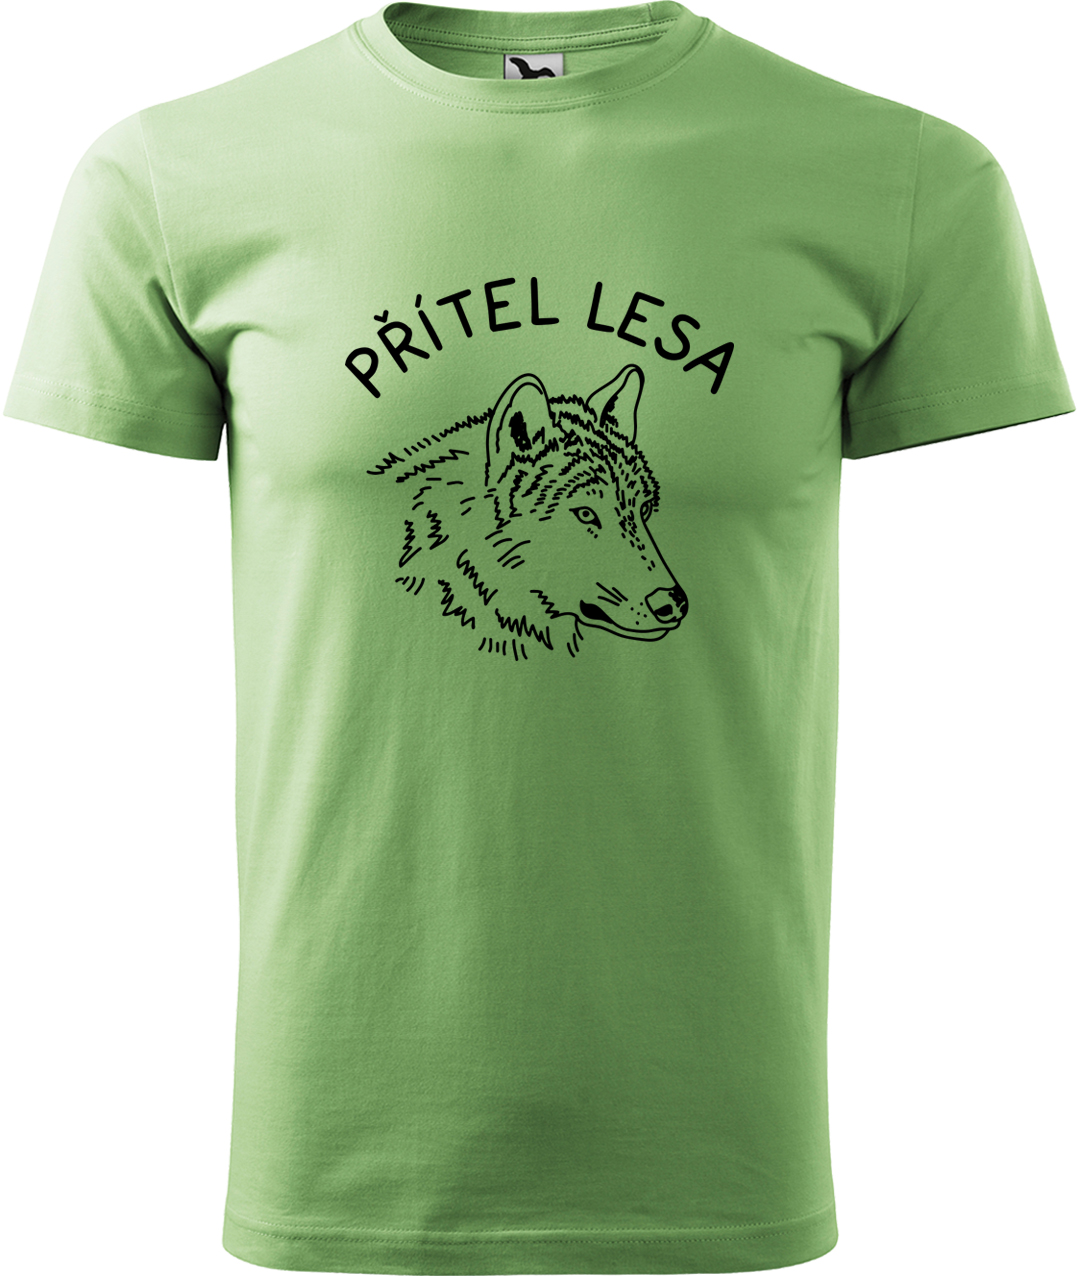 Pánské tričko s vlkem - Přítel lesa Velikost: 3XL, Barva: Trávově zelená (39), Střih: pánský